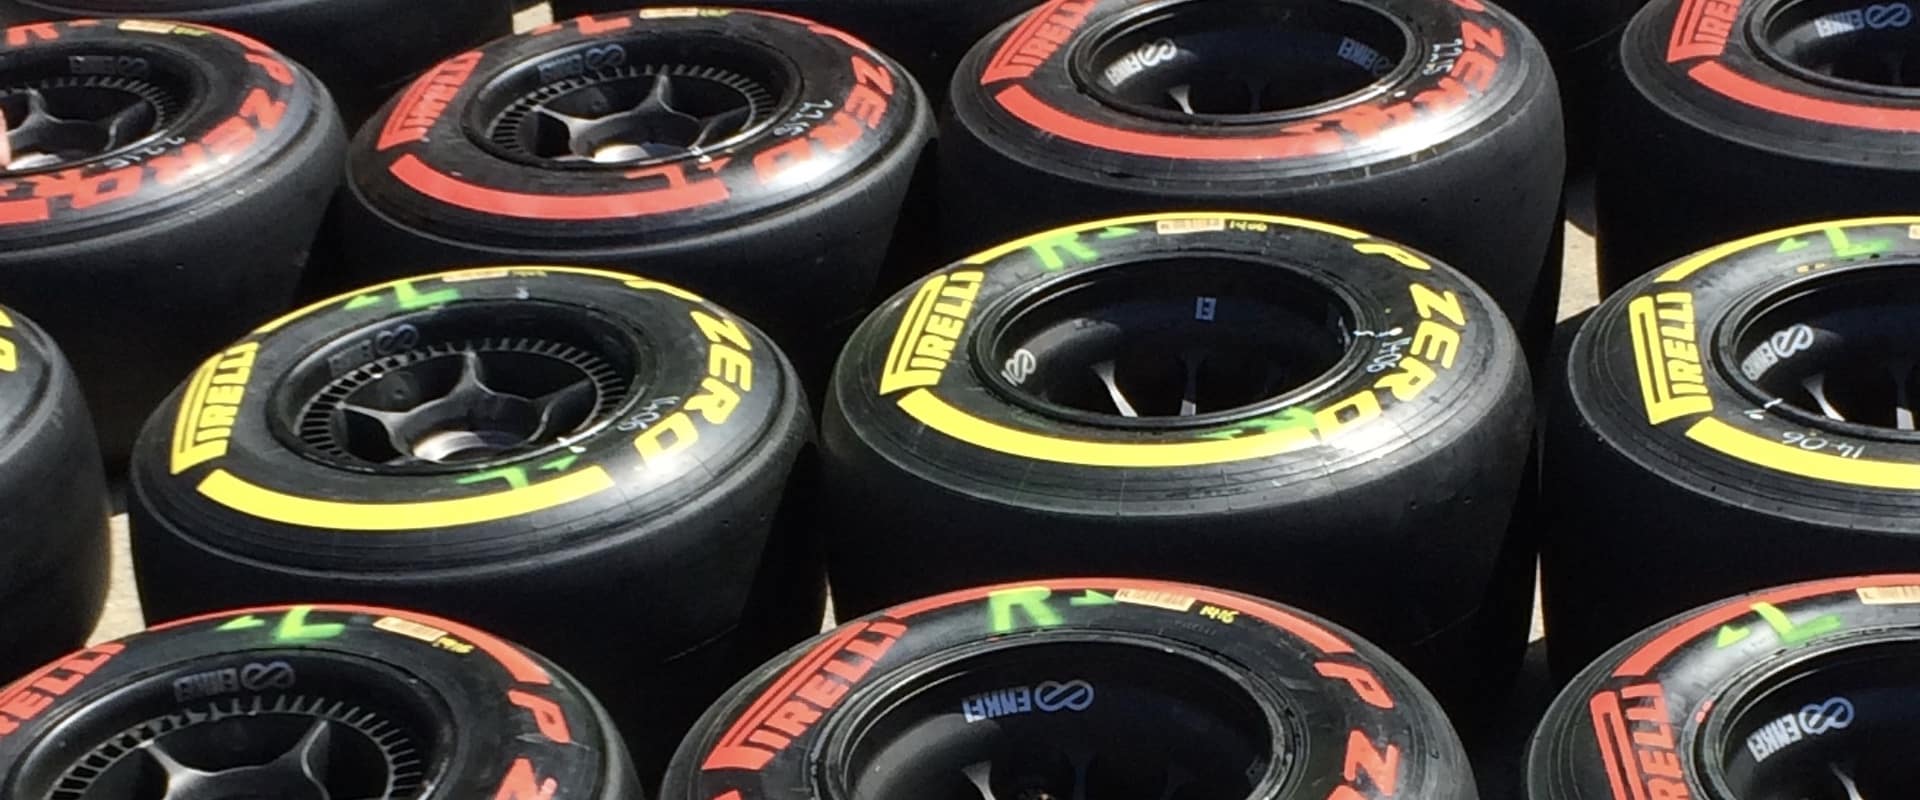 Plusieurs pneus de voitures de course avec lignes jaune et rouge, couchés au sol